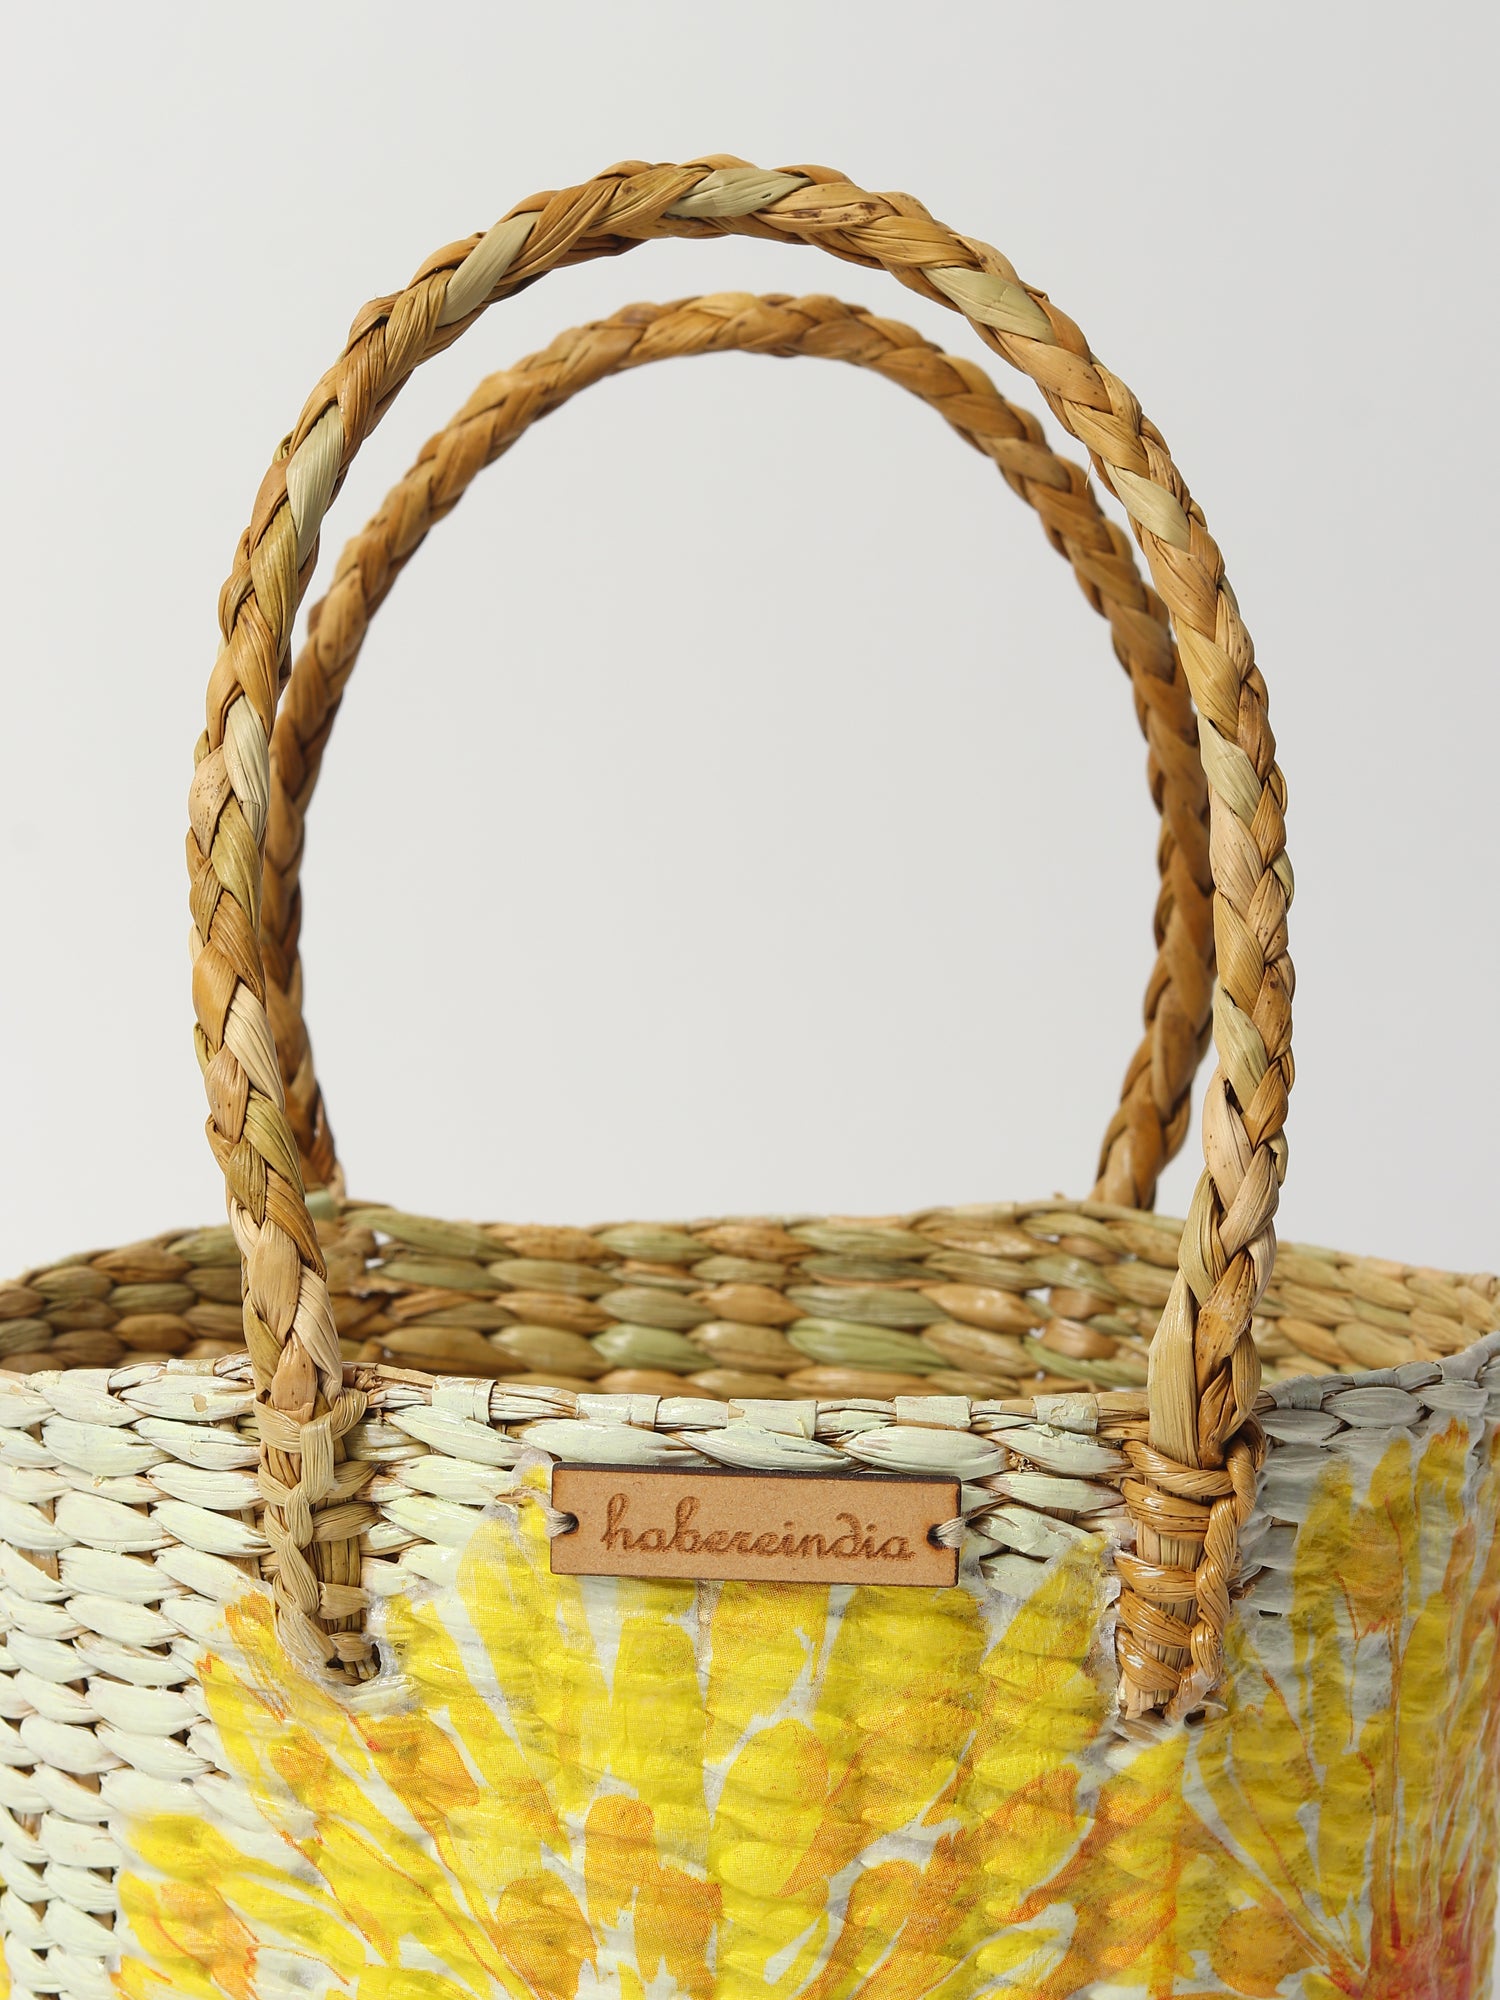  Fruit Hamper Basket